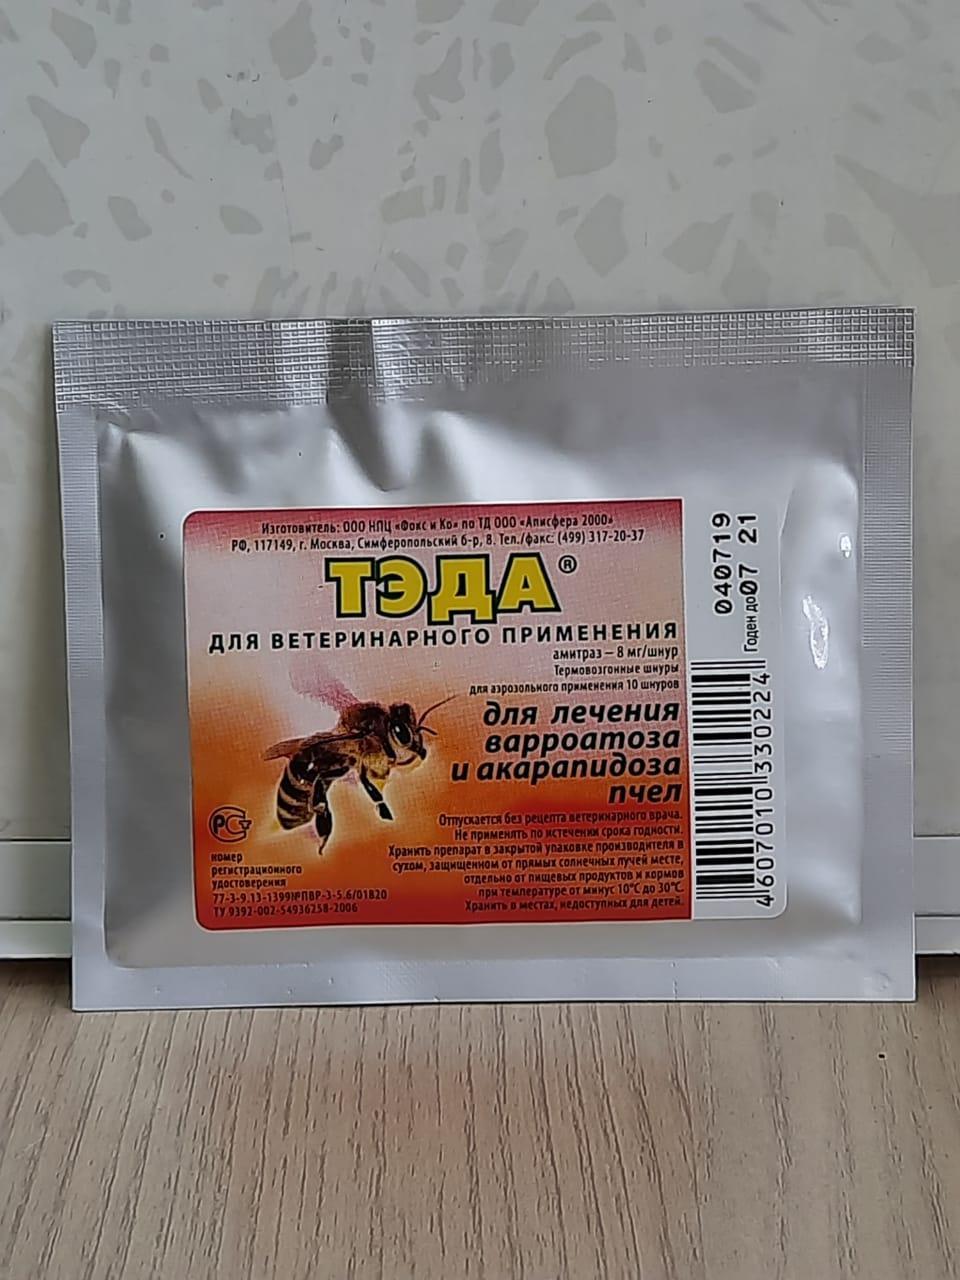 «Тэда» препарат для лечения пчел от варроатоза и акарапидоза